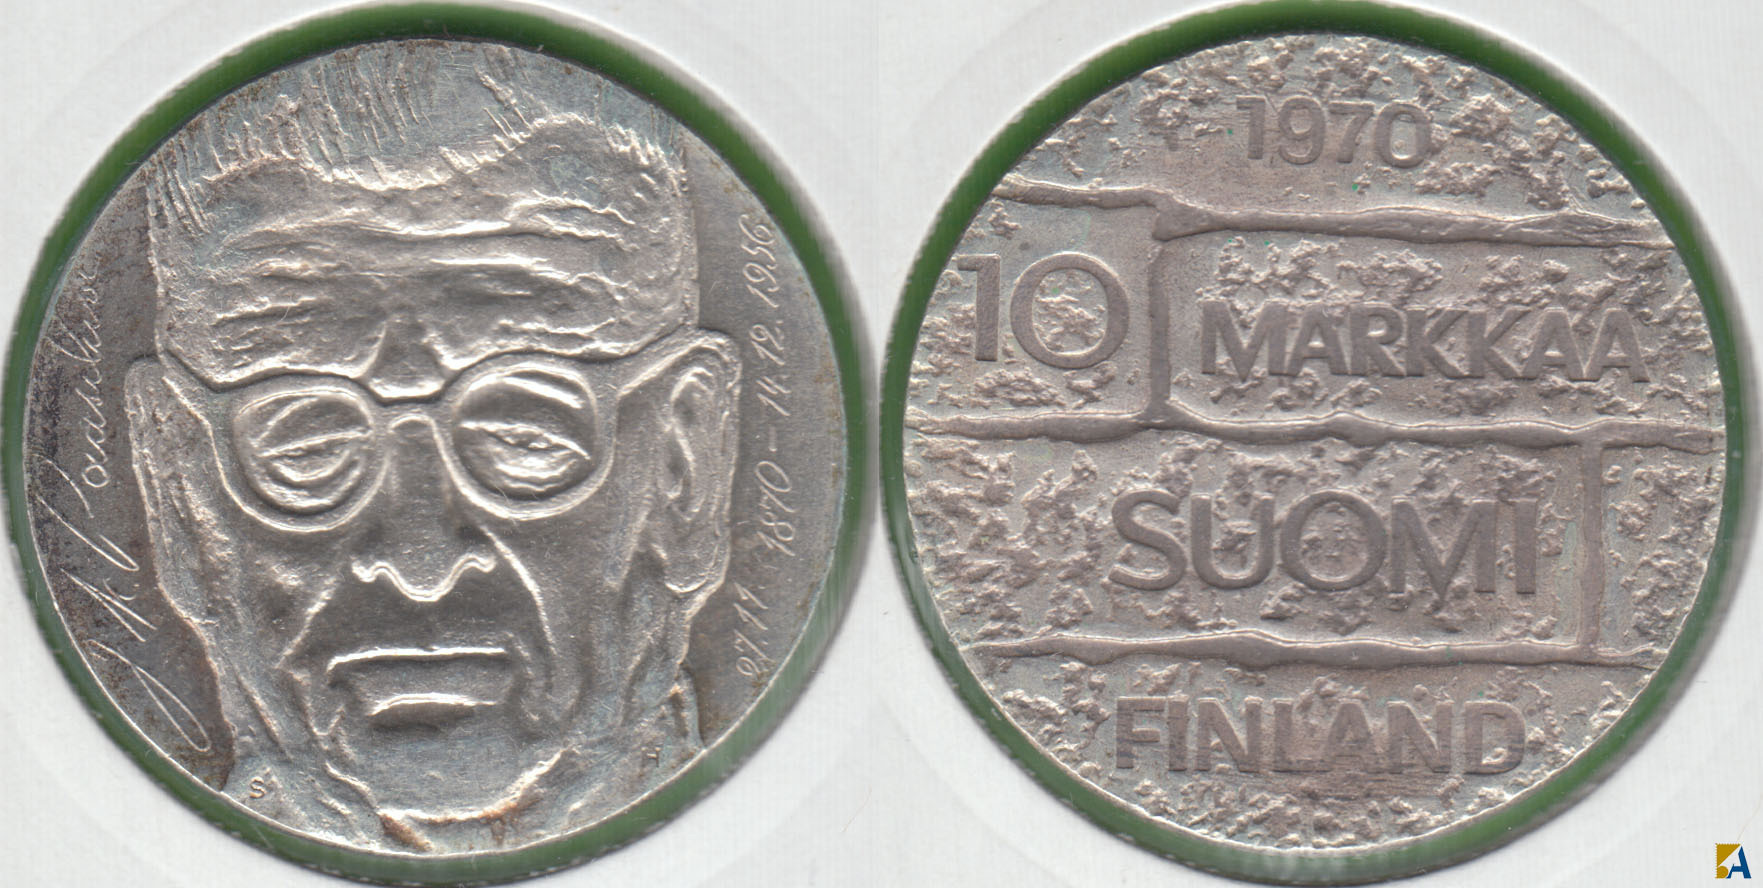 FINLANDIA - FINLAND. 10 MARKKAA DE 1970 H. PLATA 0.500.